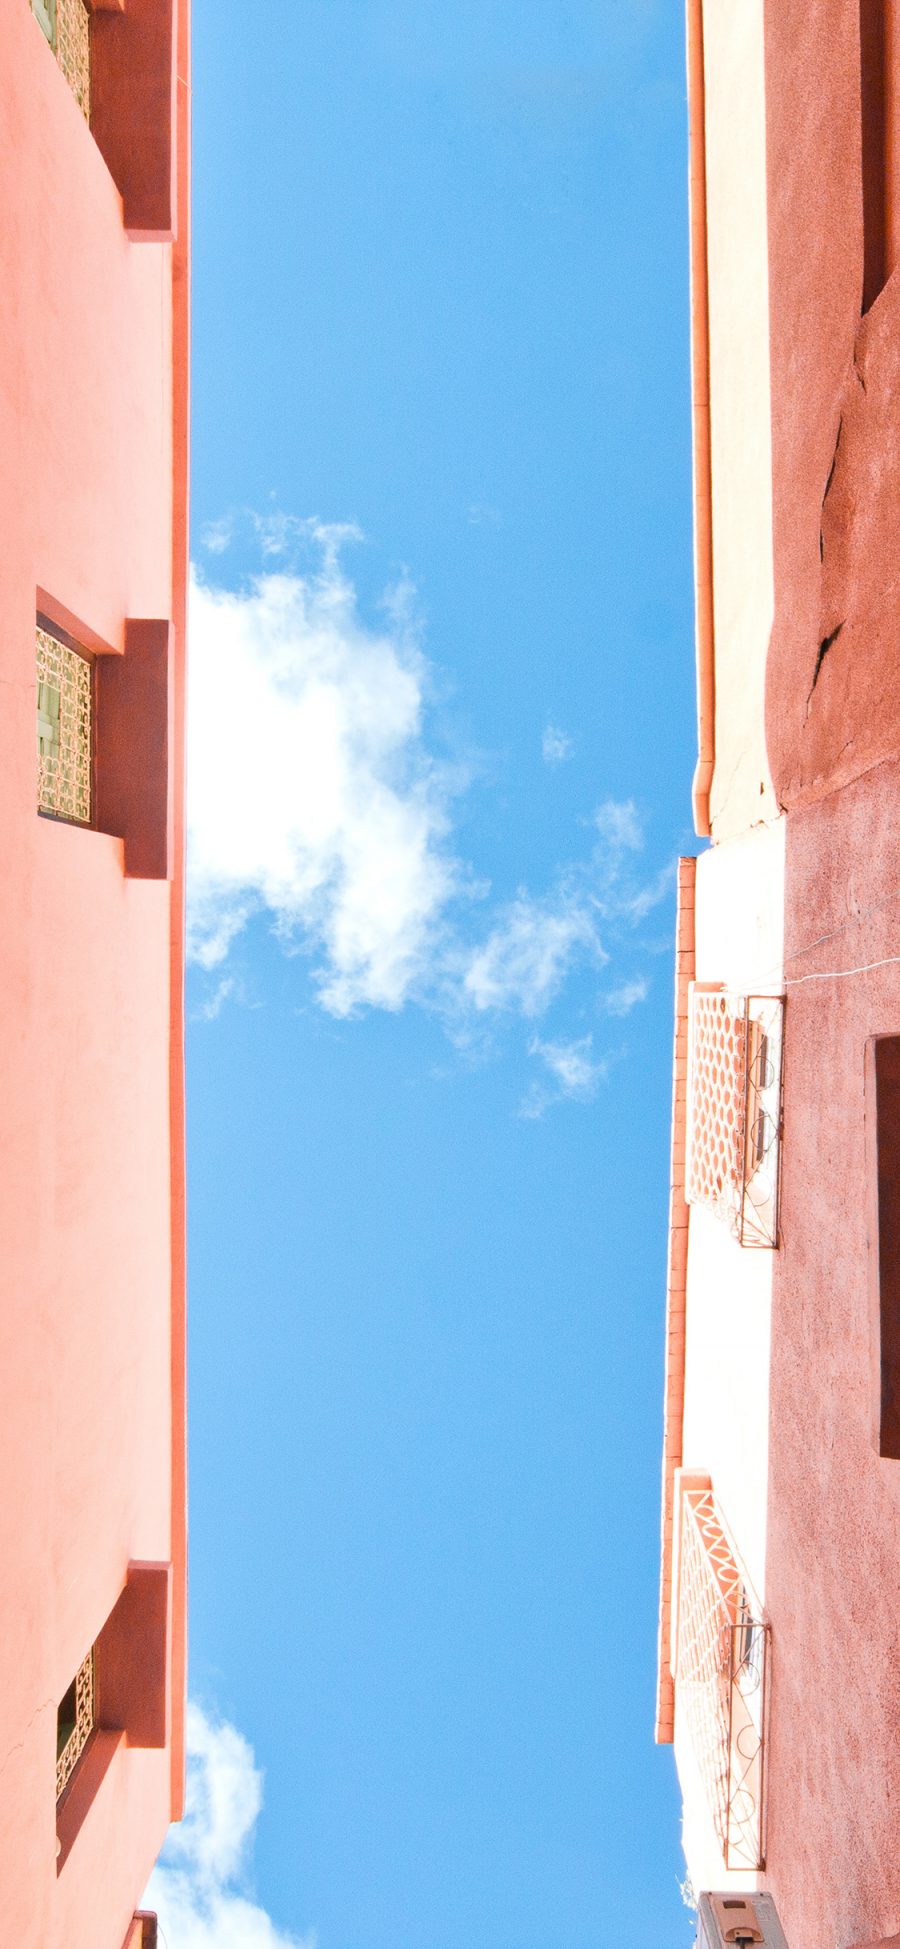 [2436×1125]天空 建筑 楼房 蓝天白云 窗 苹果手机壁纸图片